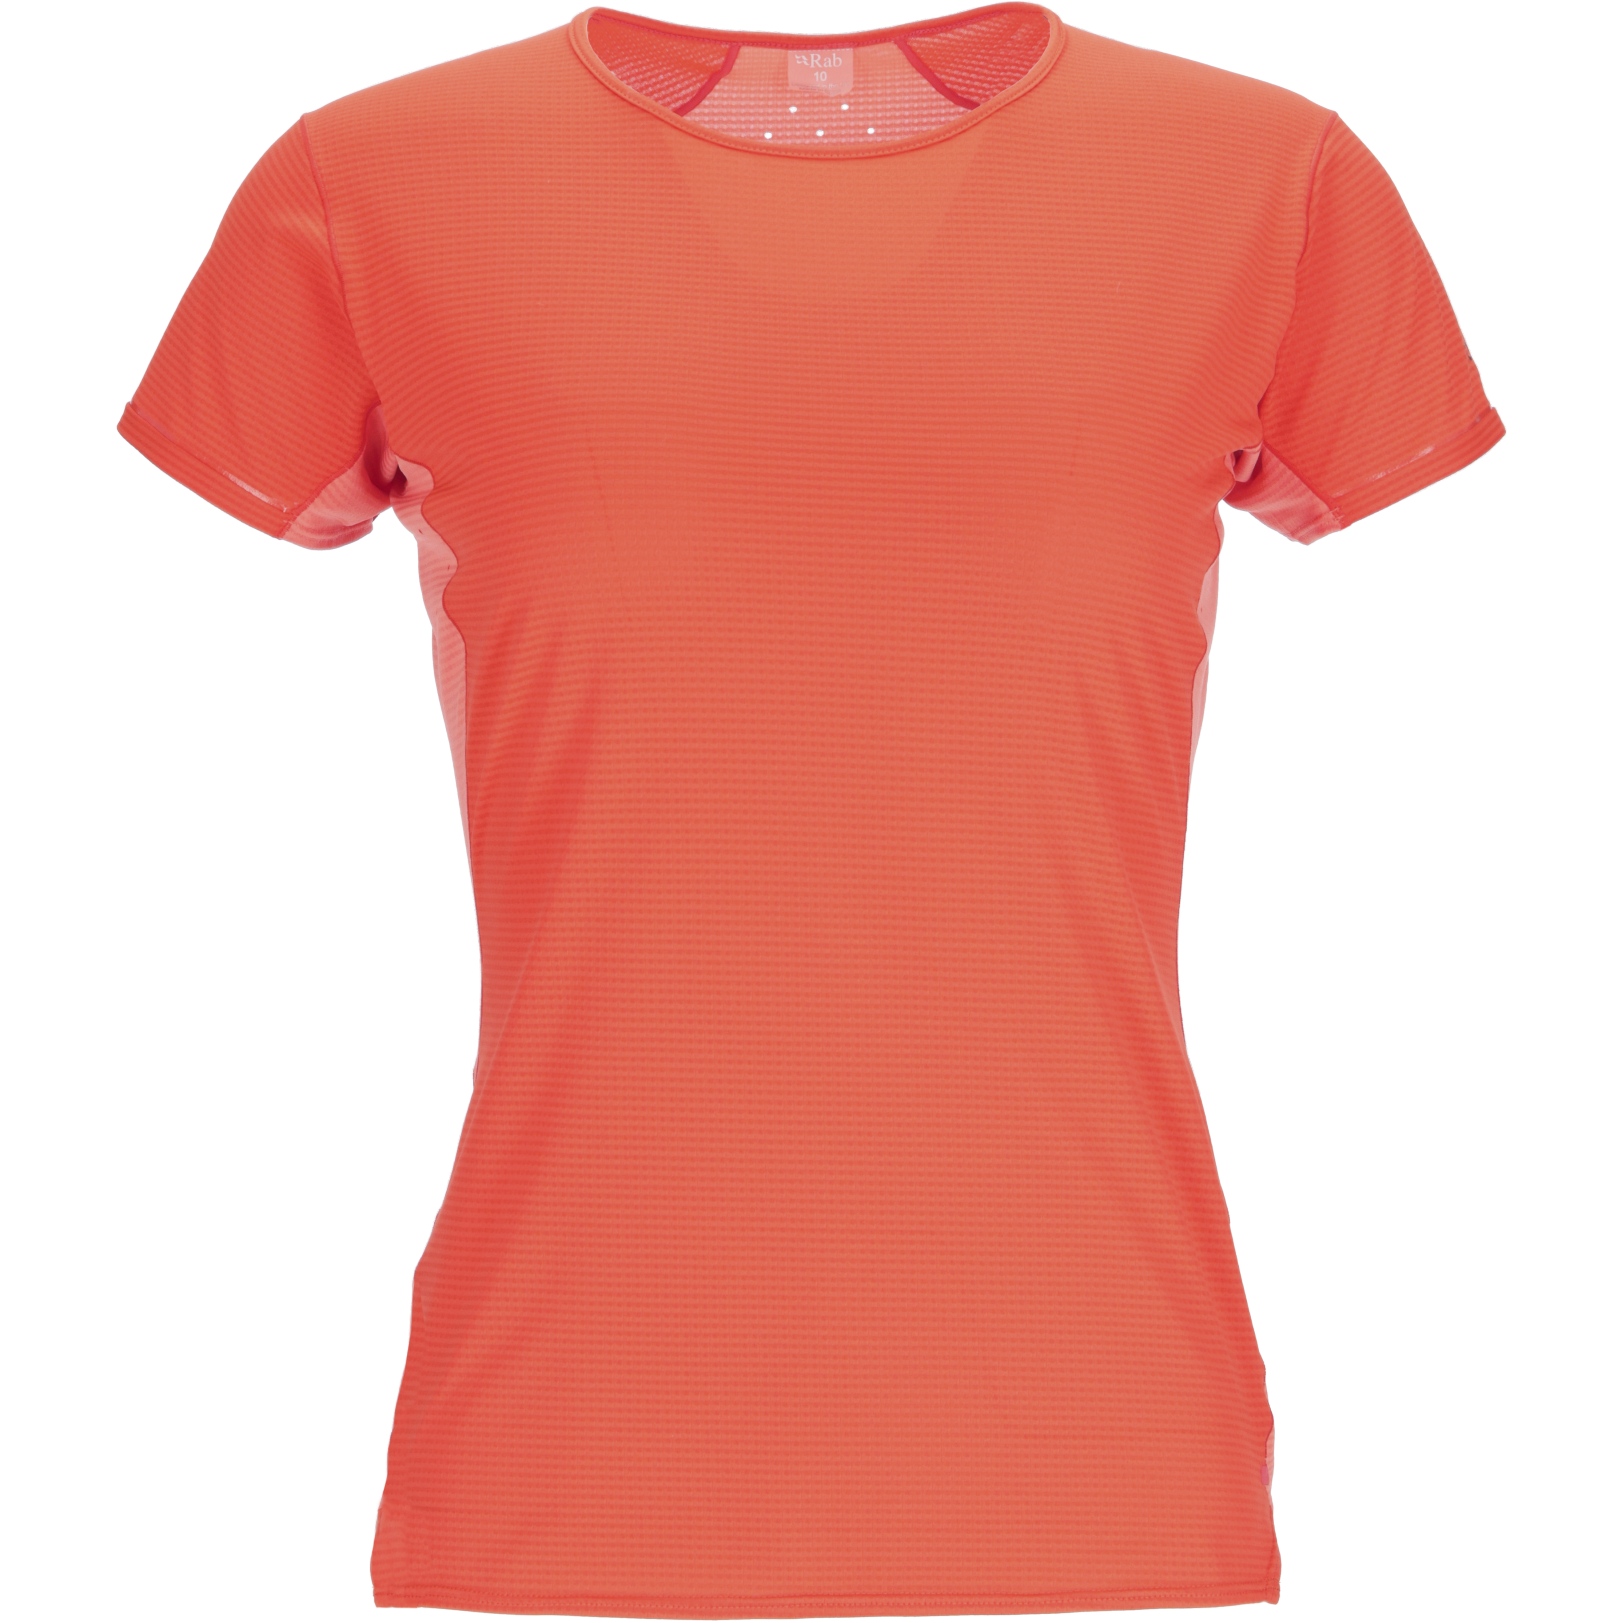 Produktbild von Rab Sonic Ultra T-Shirt Damen - red grapefruit/reef